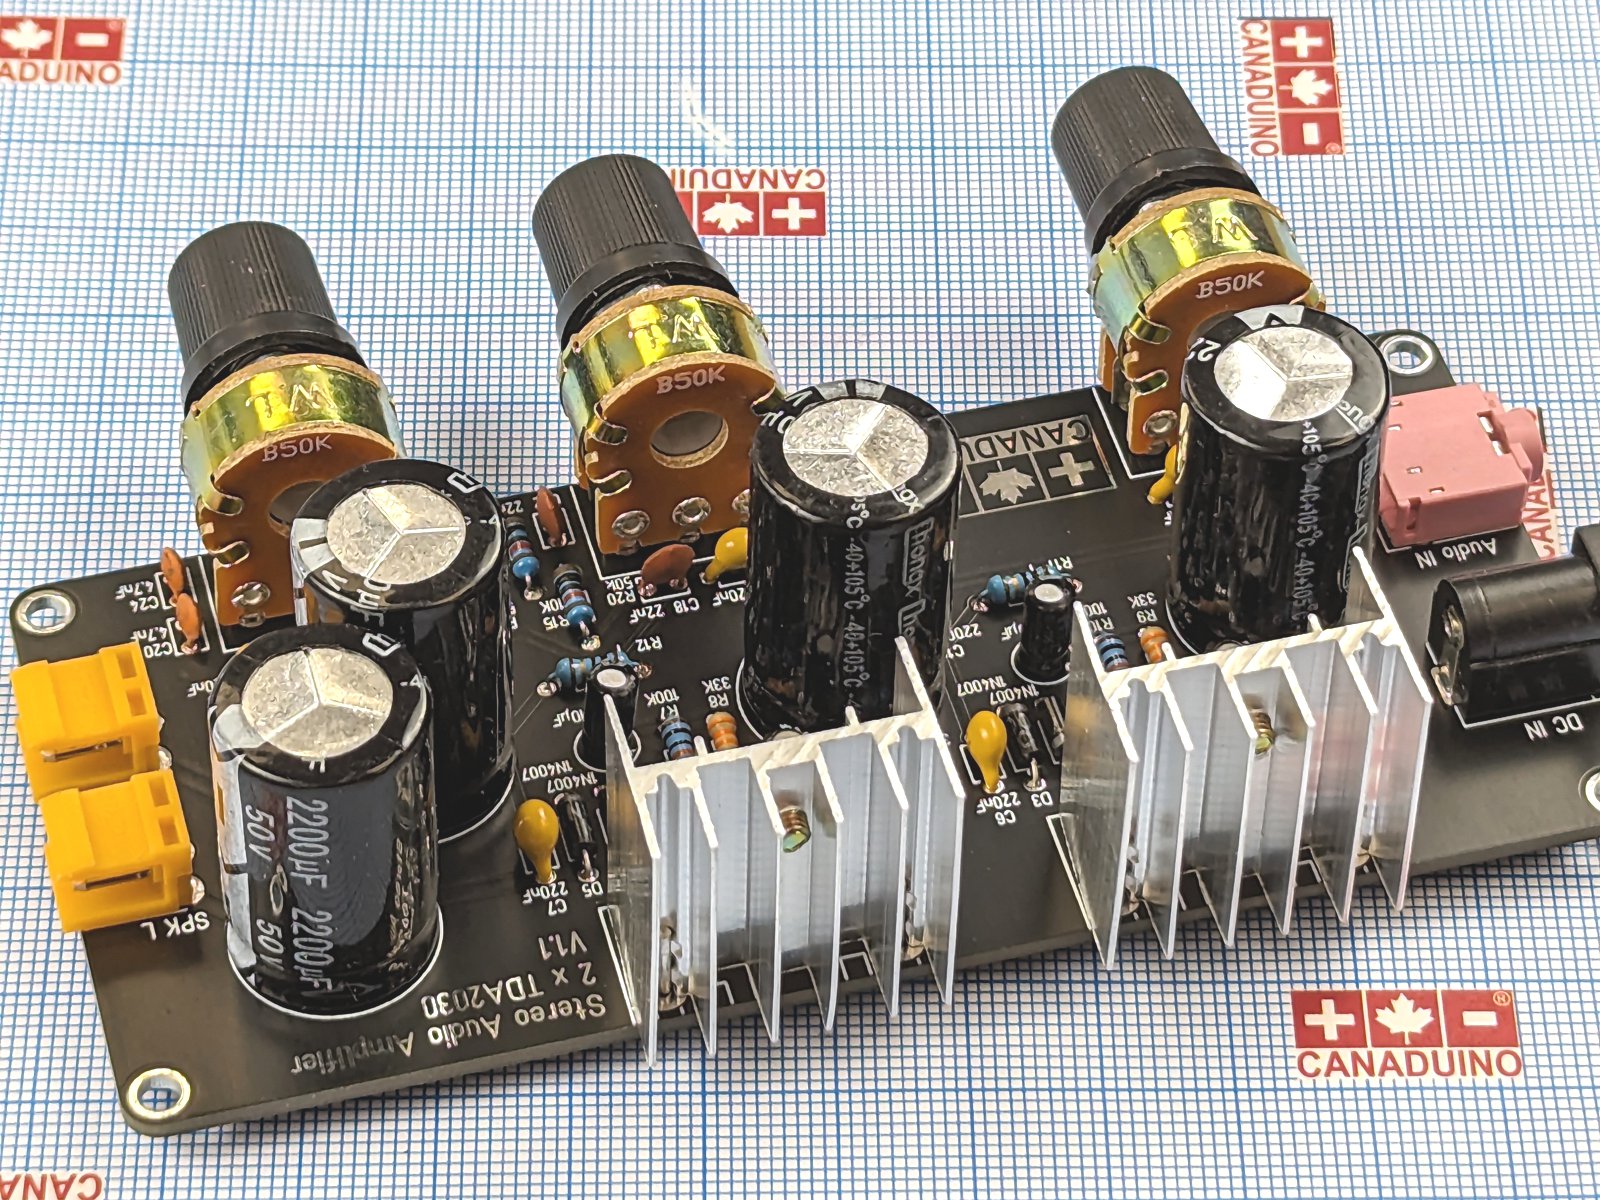 26789 dual TDA2030 amplifier V1.1 DIY kit 3